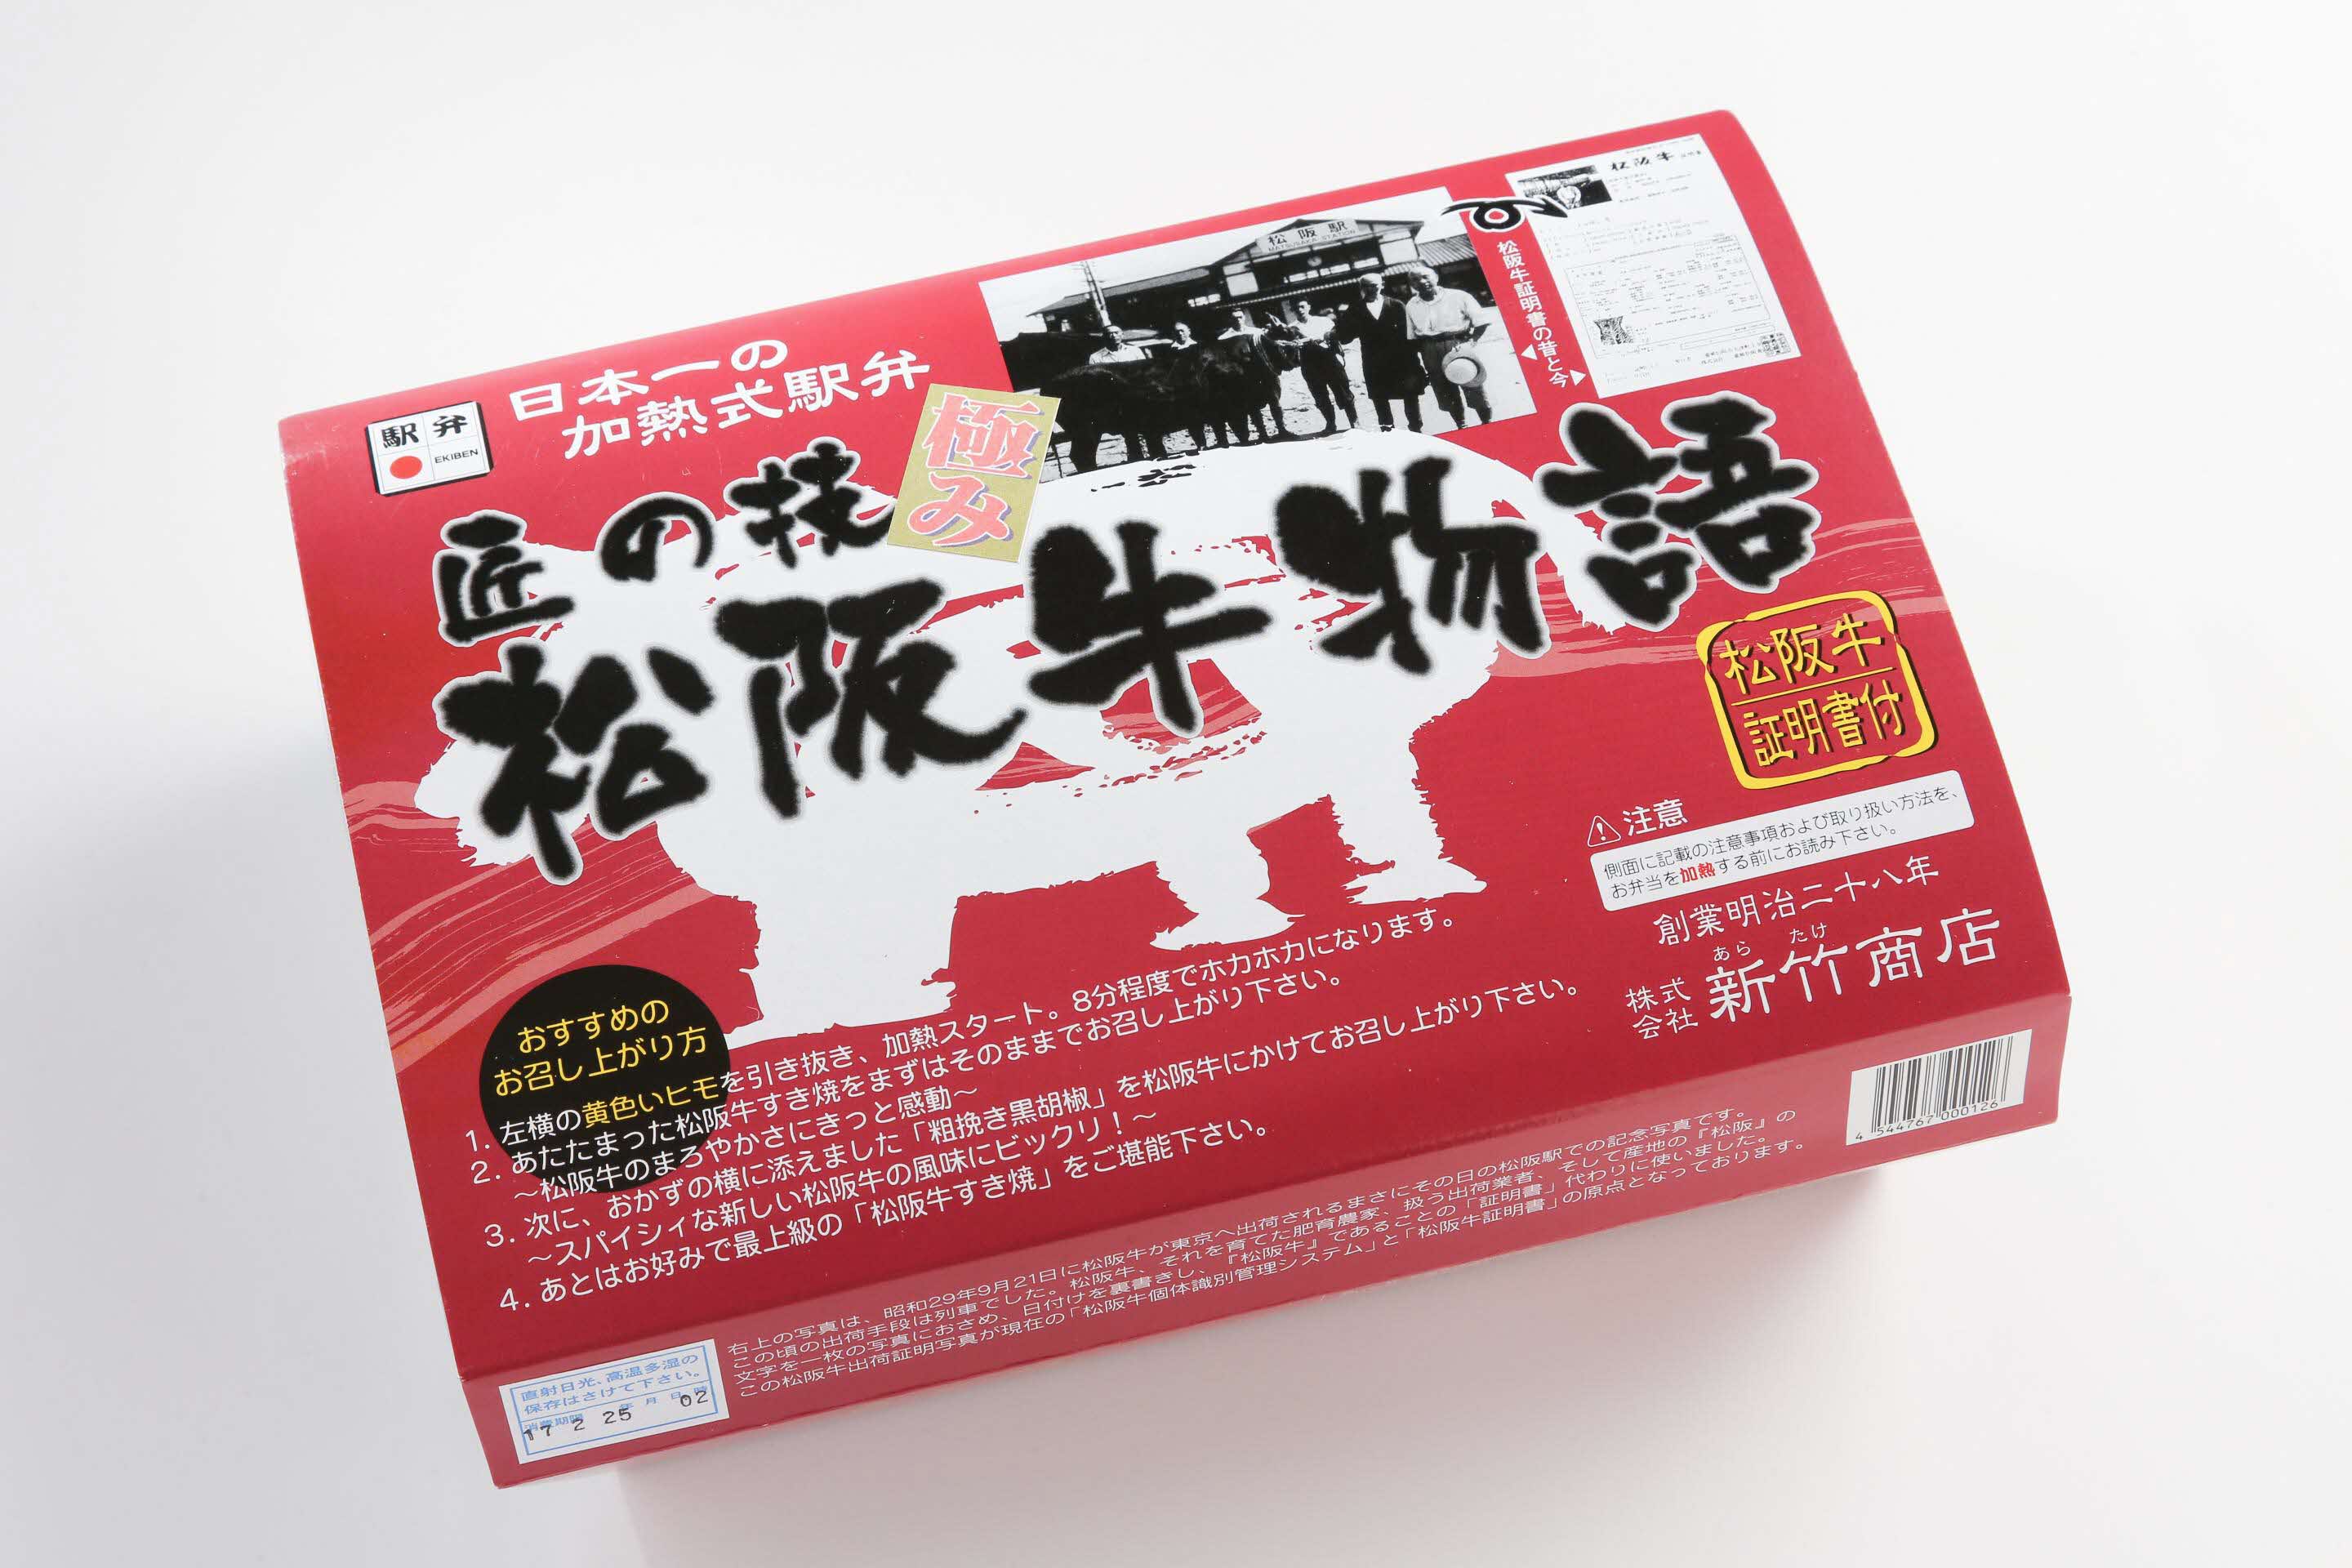 【1.4-3】最高級の松阪牛を使った 日本一の加熱式すき焼き弁当 匠の技松阪牛物語（1個入り）